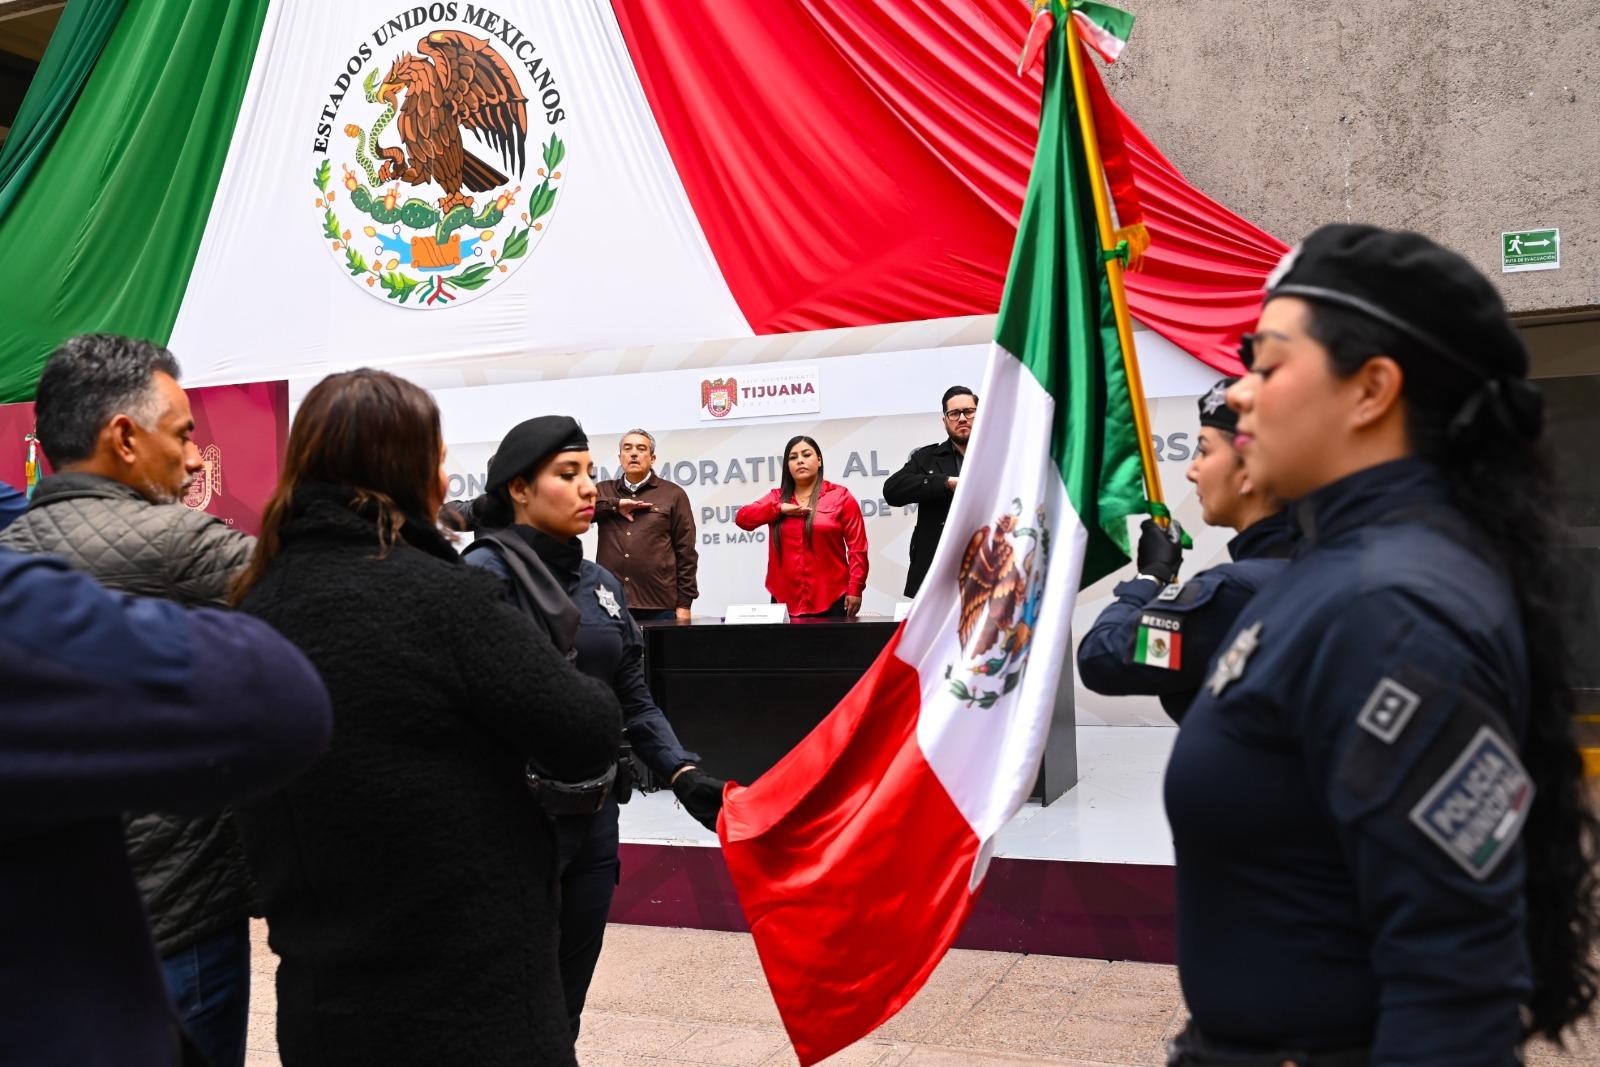 Aniversario de la batalla de puebla, recuerda cómo los mexicanos sacamos la casta: Ayuntamiento de Tijuana